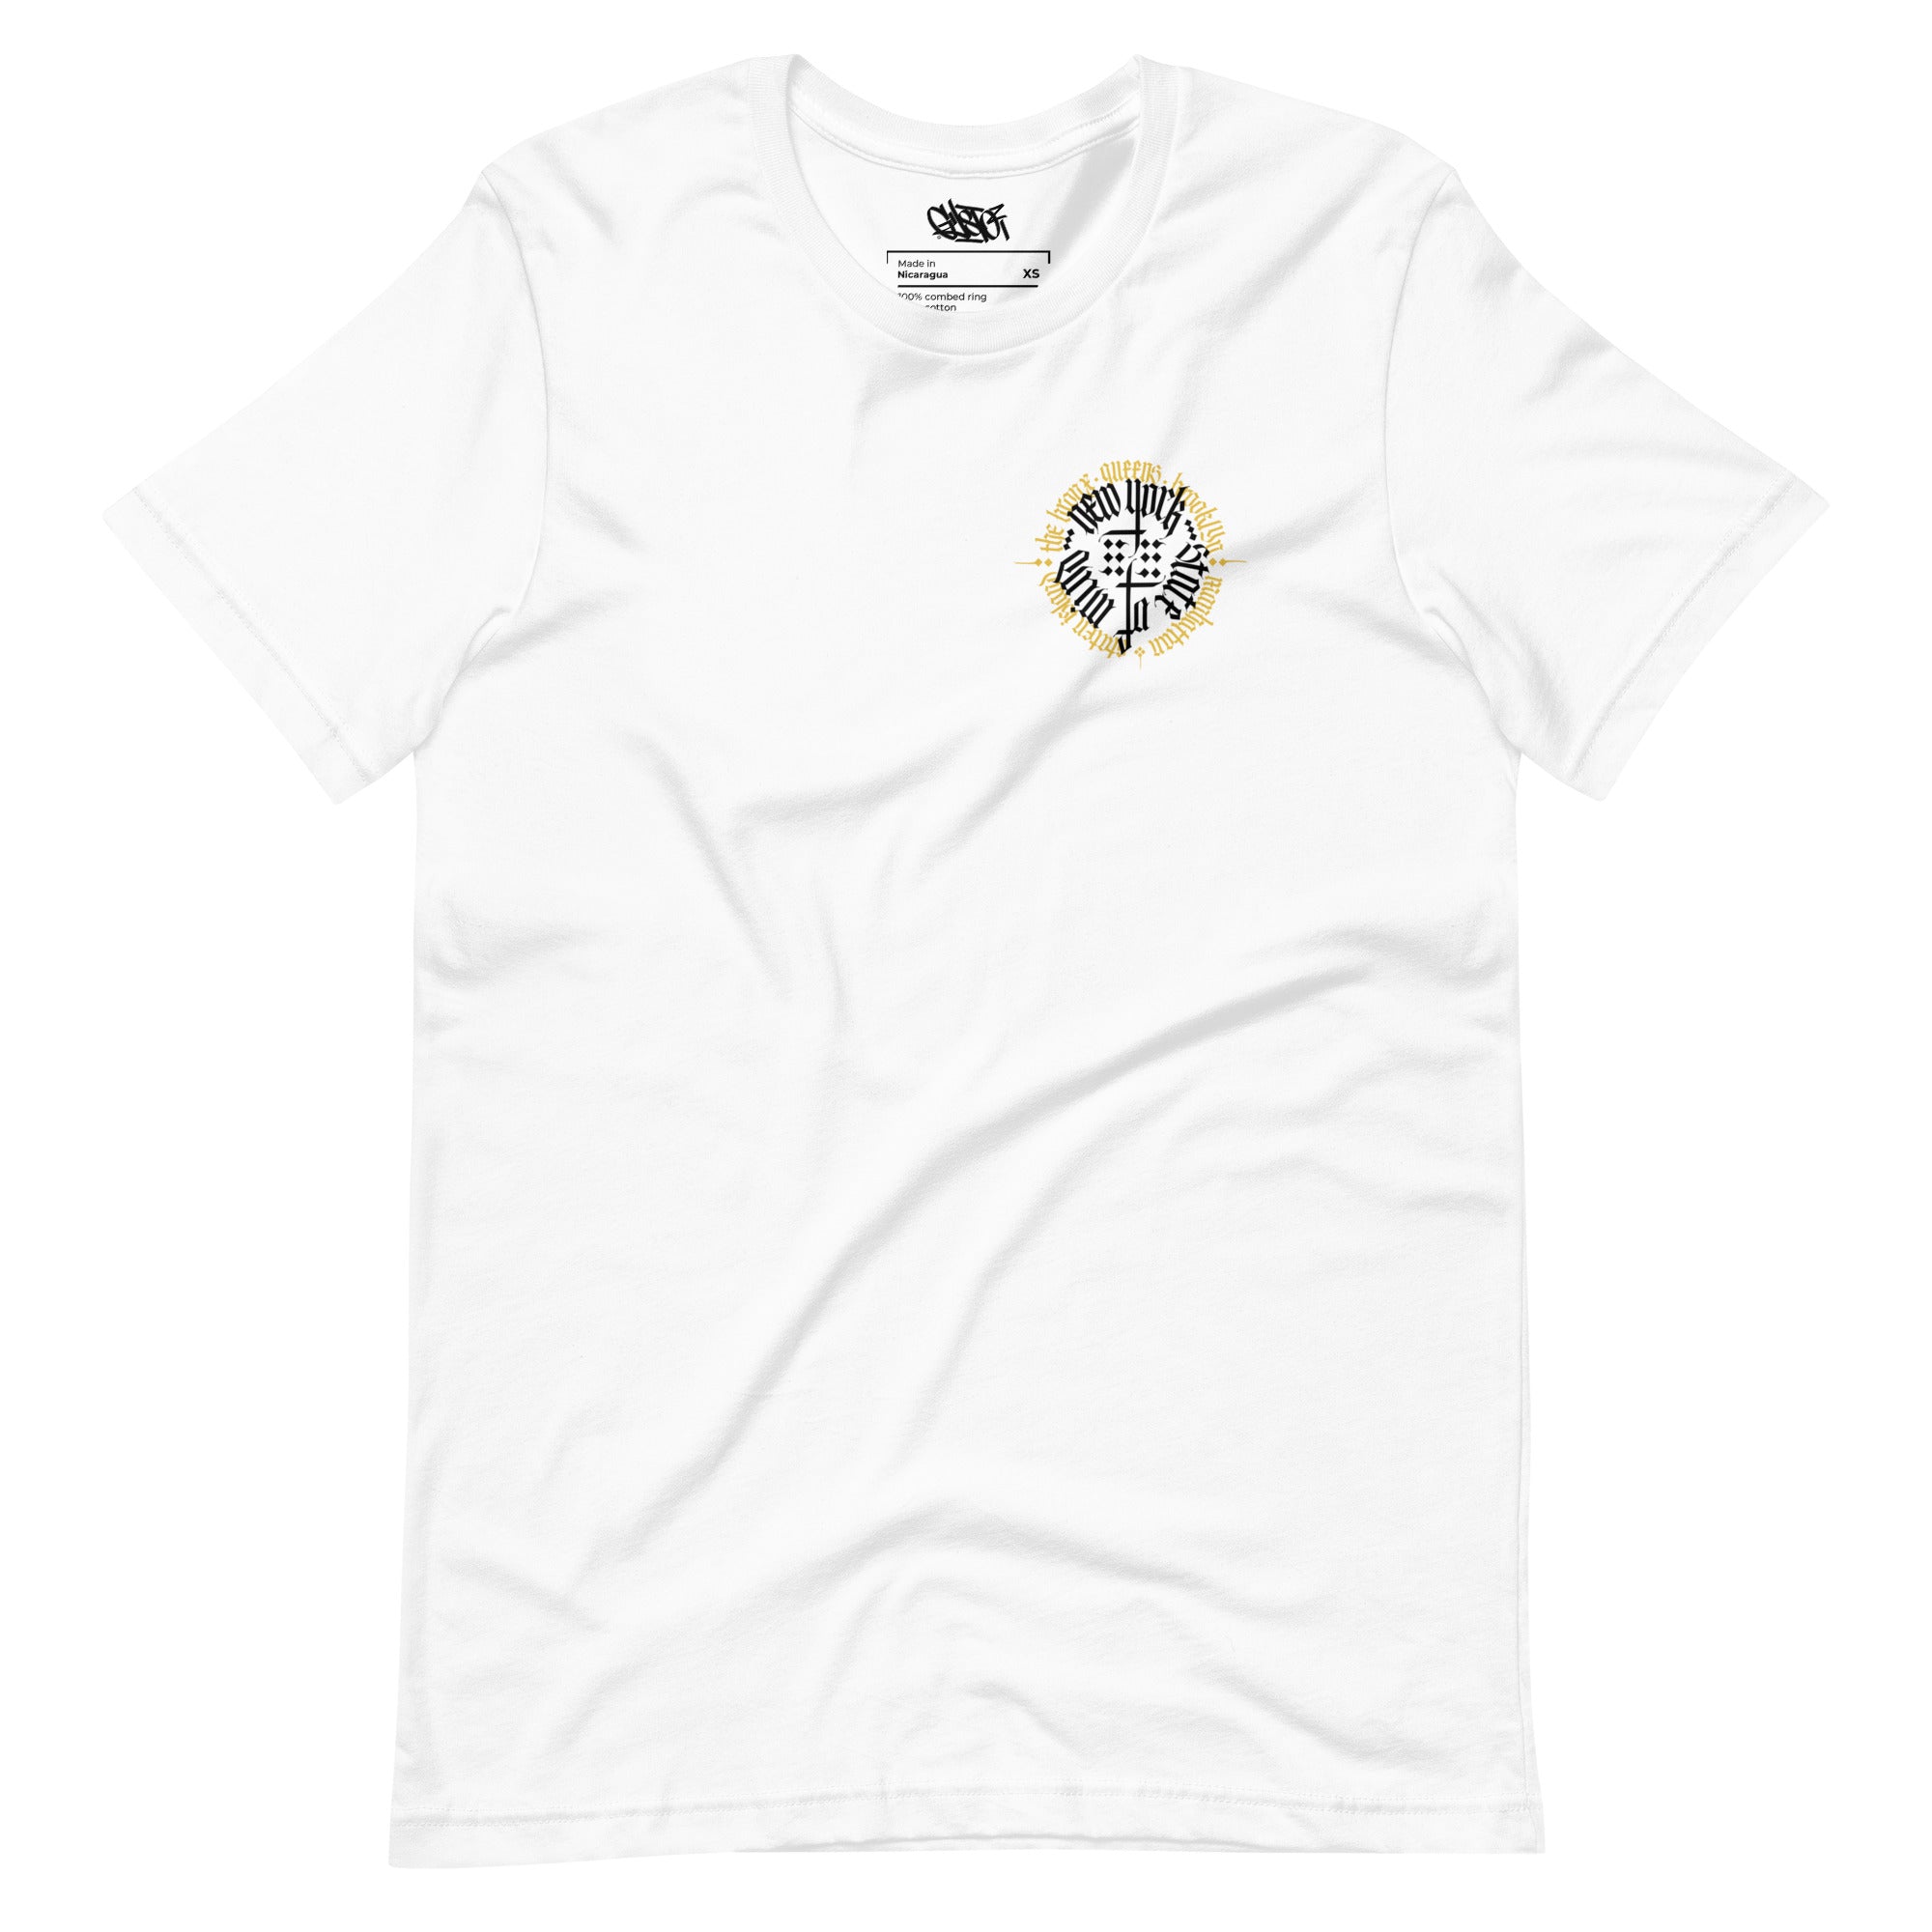 NY State of Mind Calligraphy - Unisex T-Shirt - GustoNYC